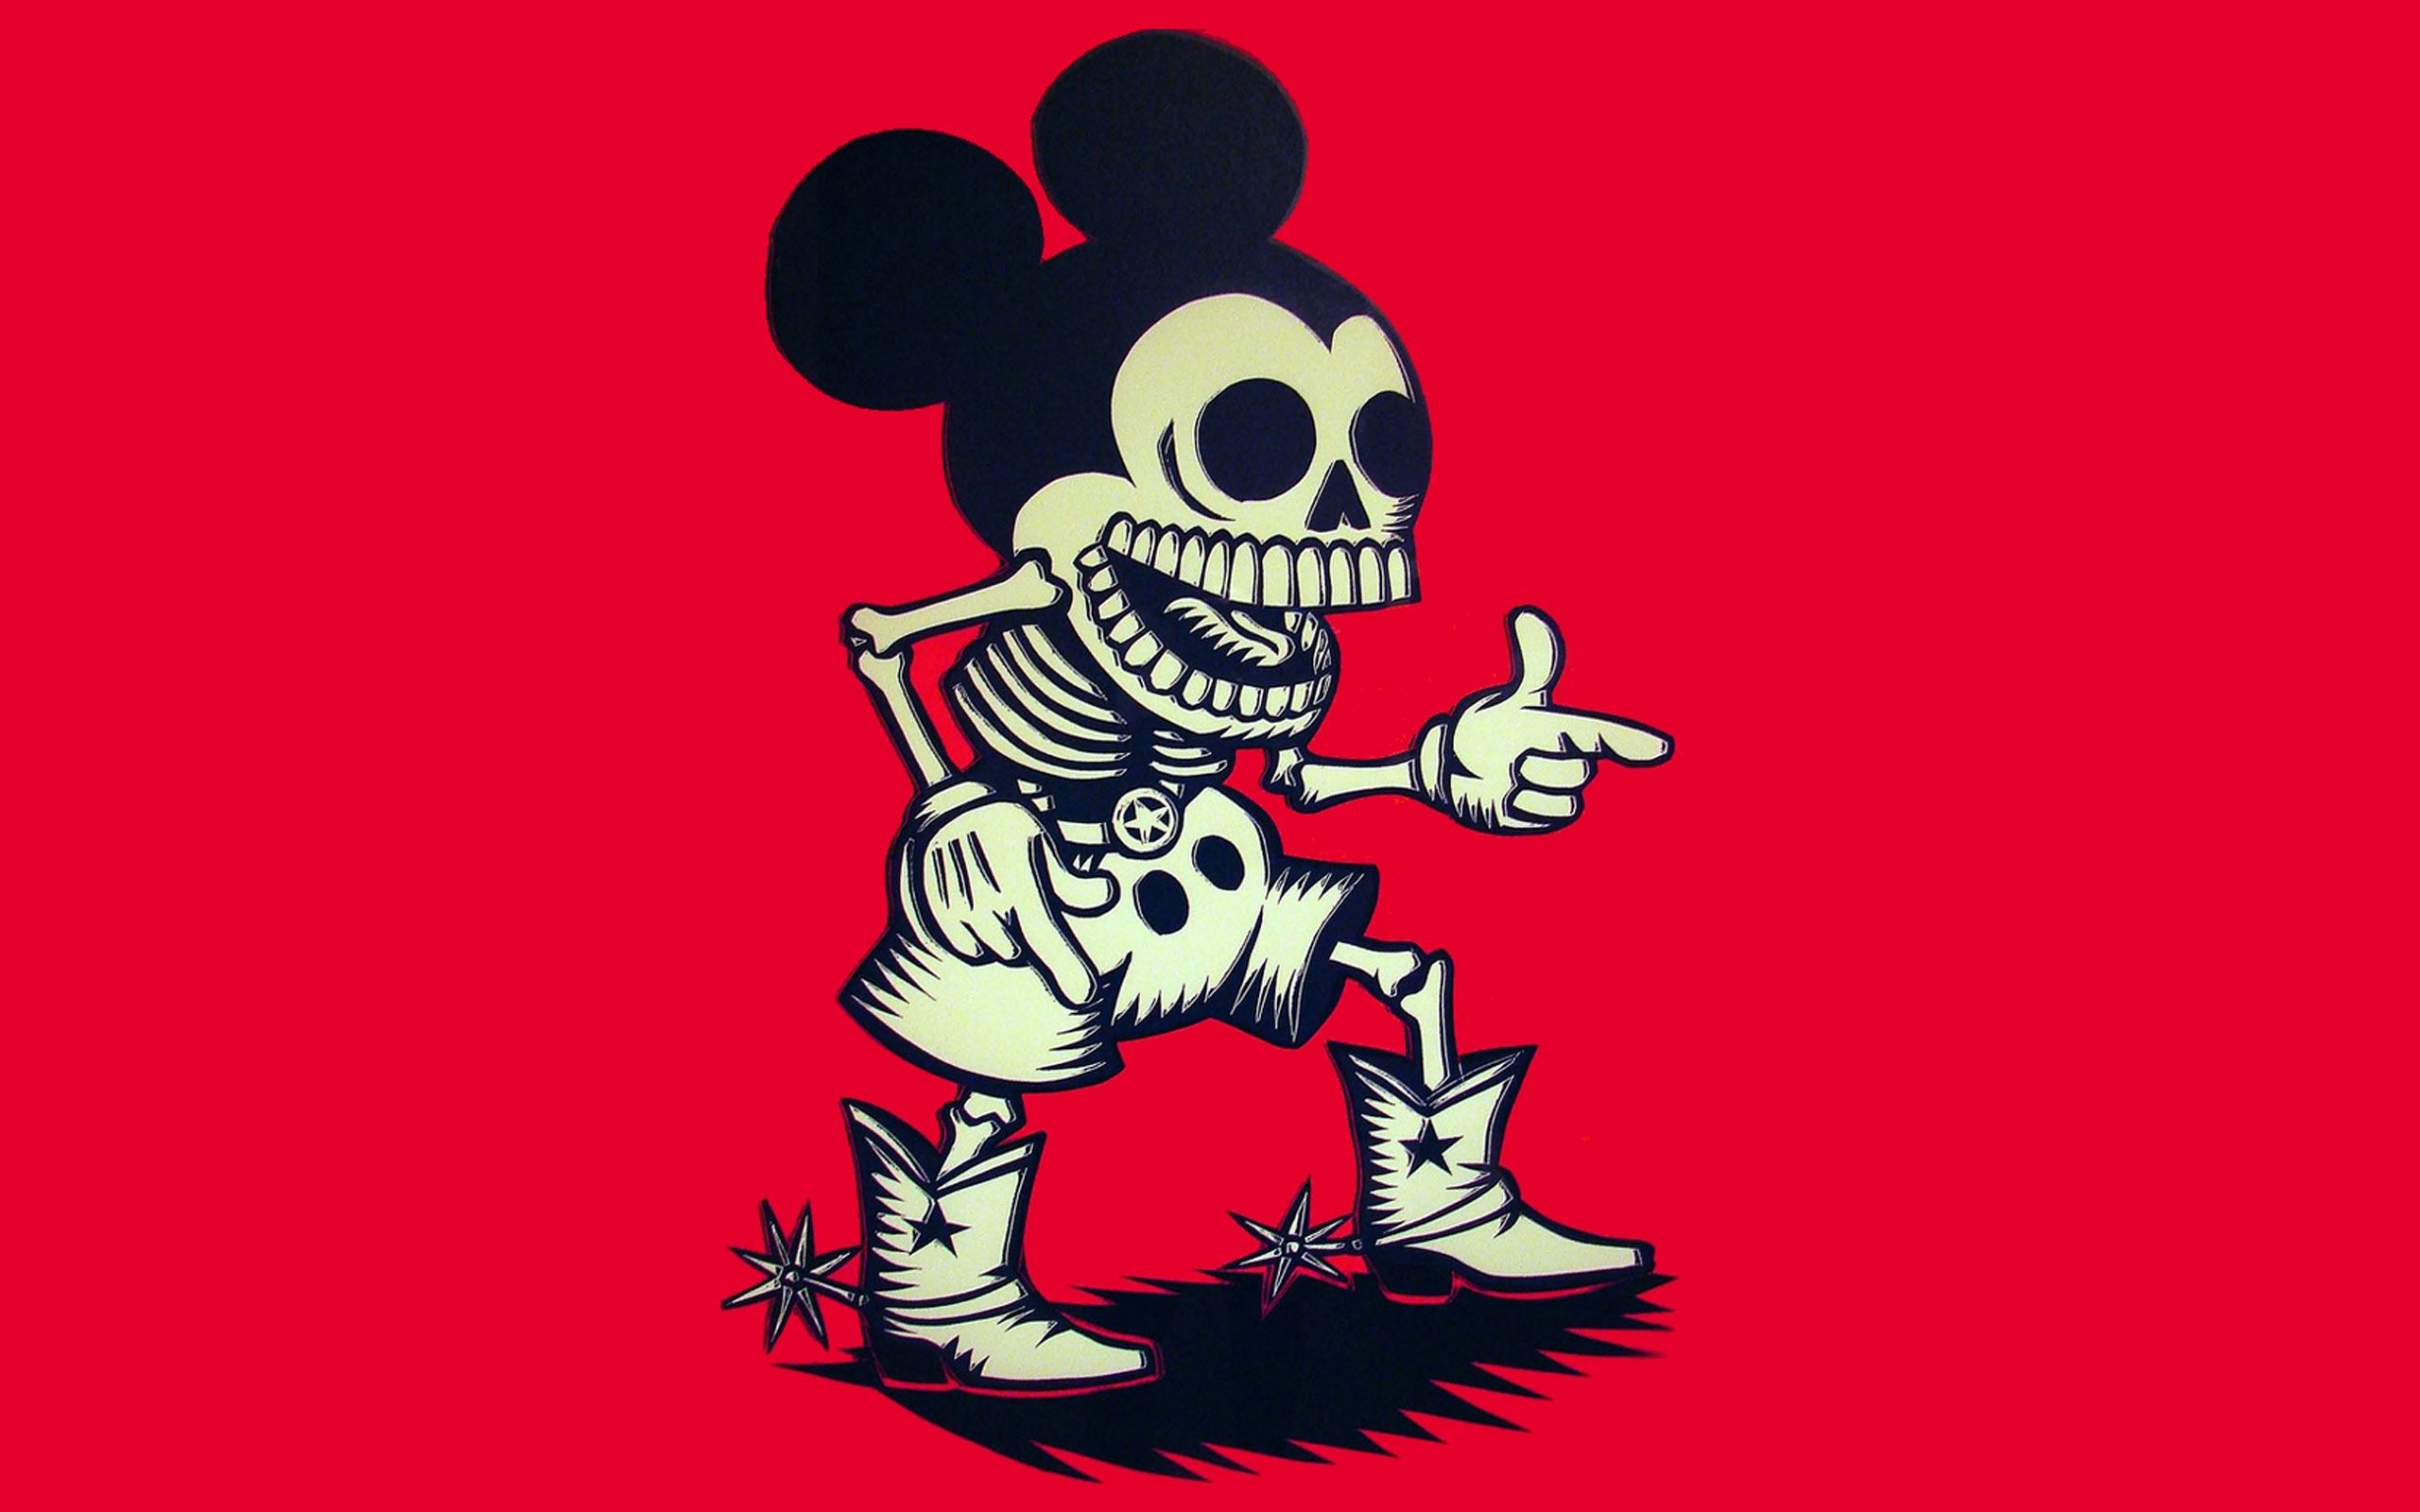 Skeleton Cowboy Mickey. Mickey mouse wallpaper, Skeleton